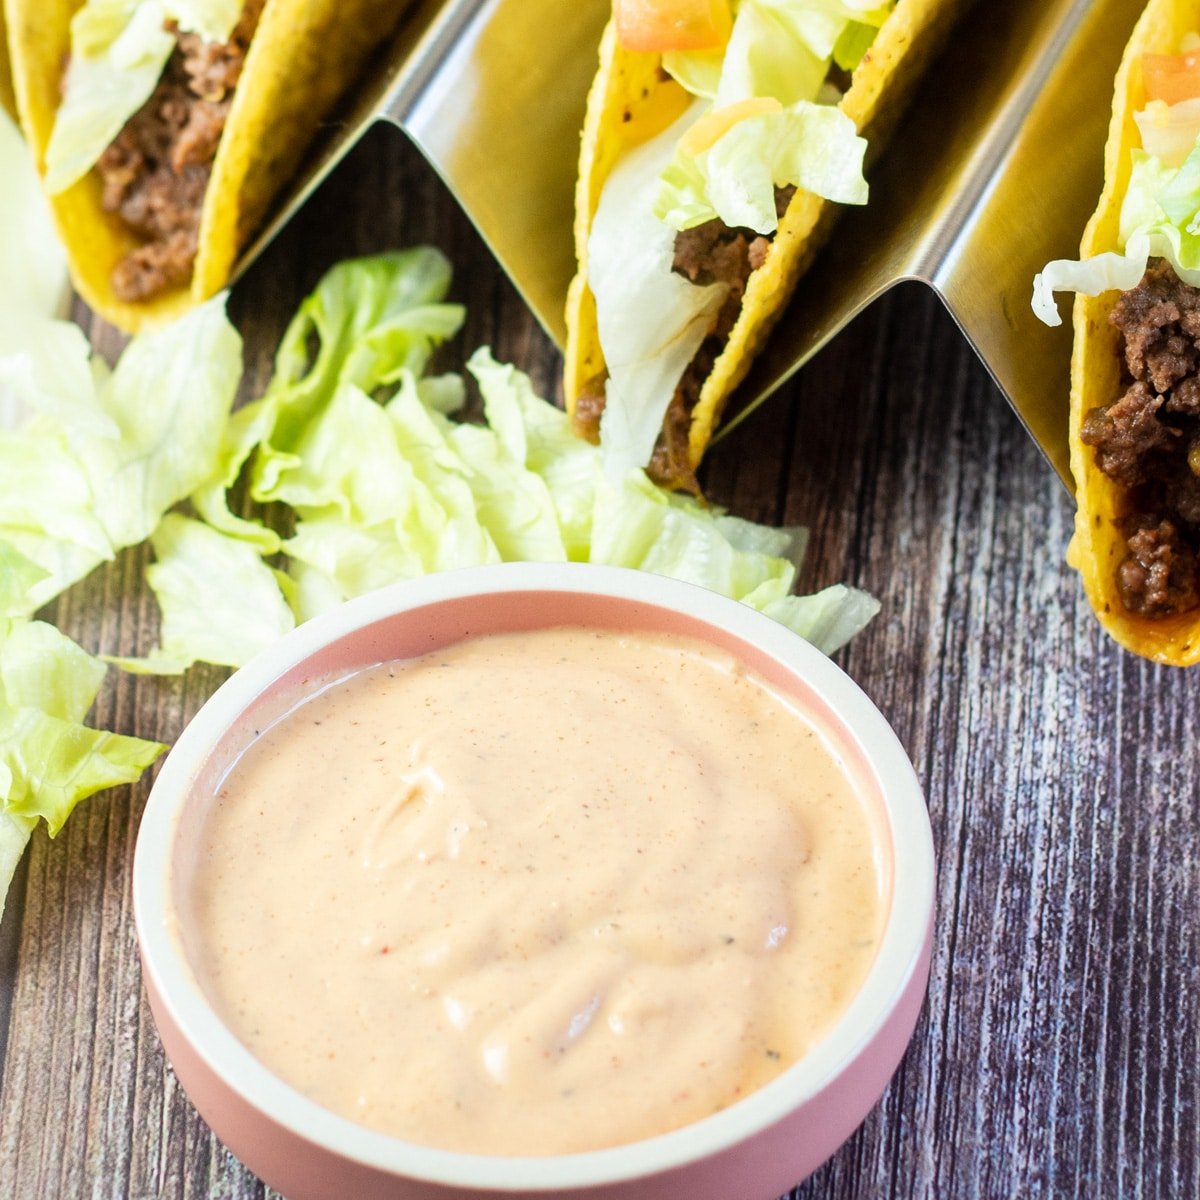 Fyrkantig bild av taco bell kryddig ranchero sås copycat i en liten skål.